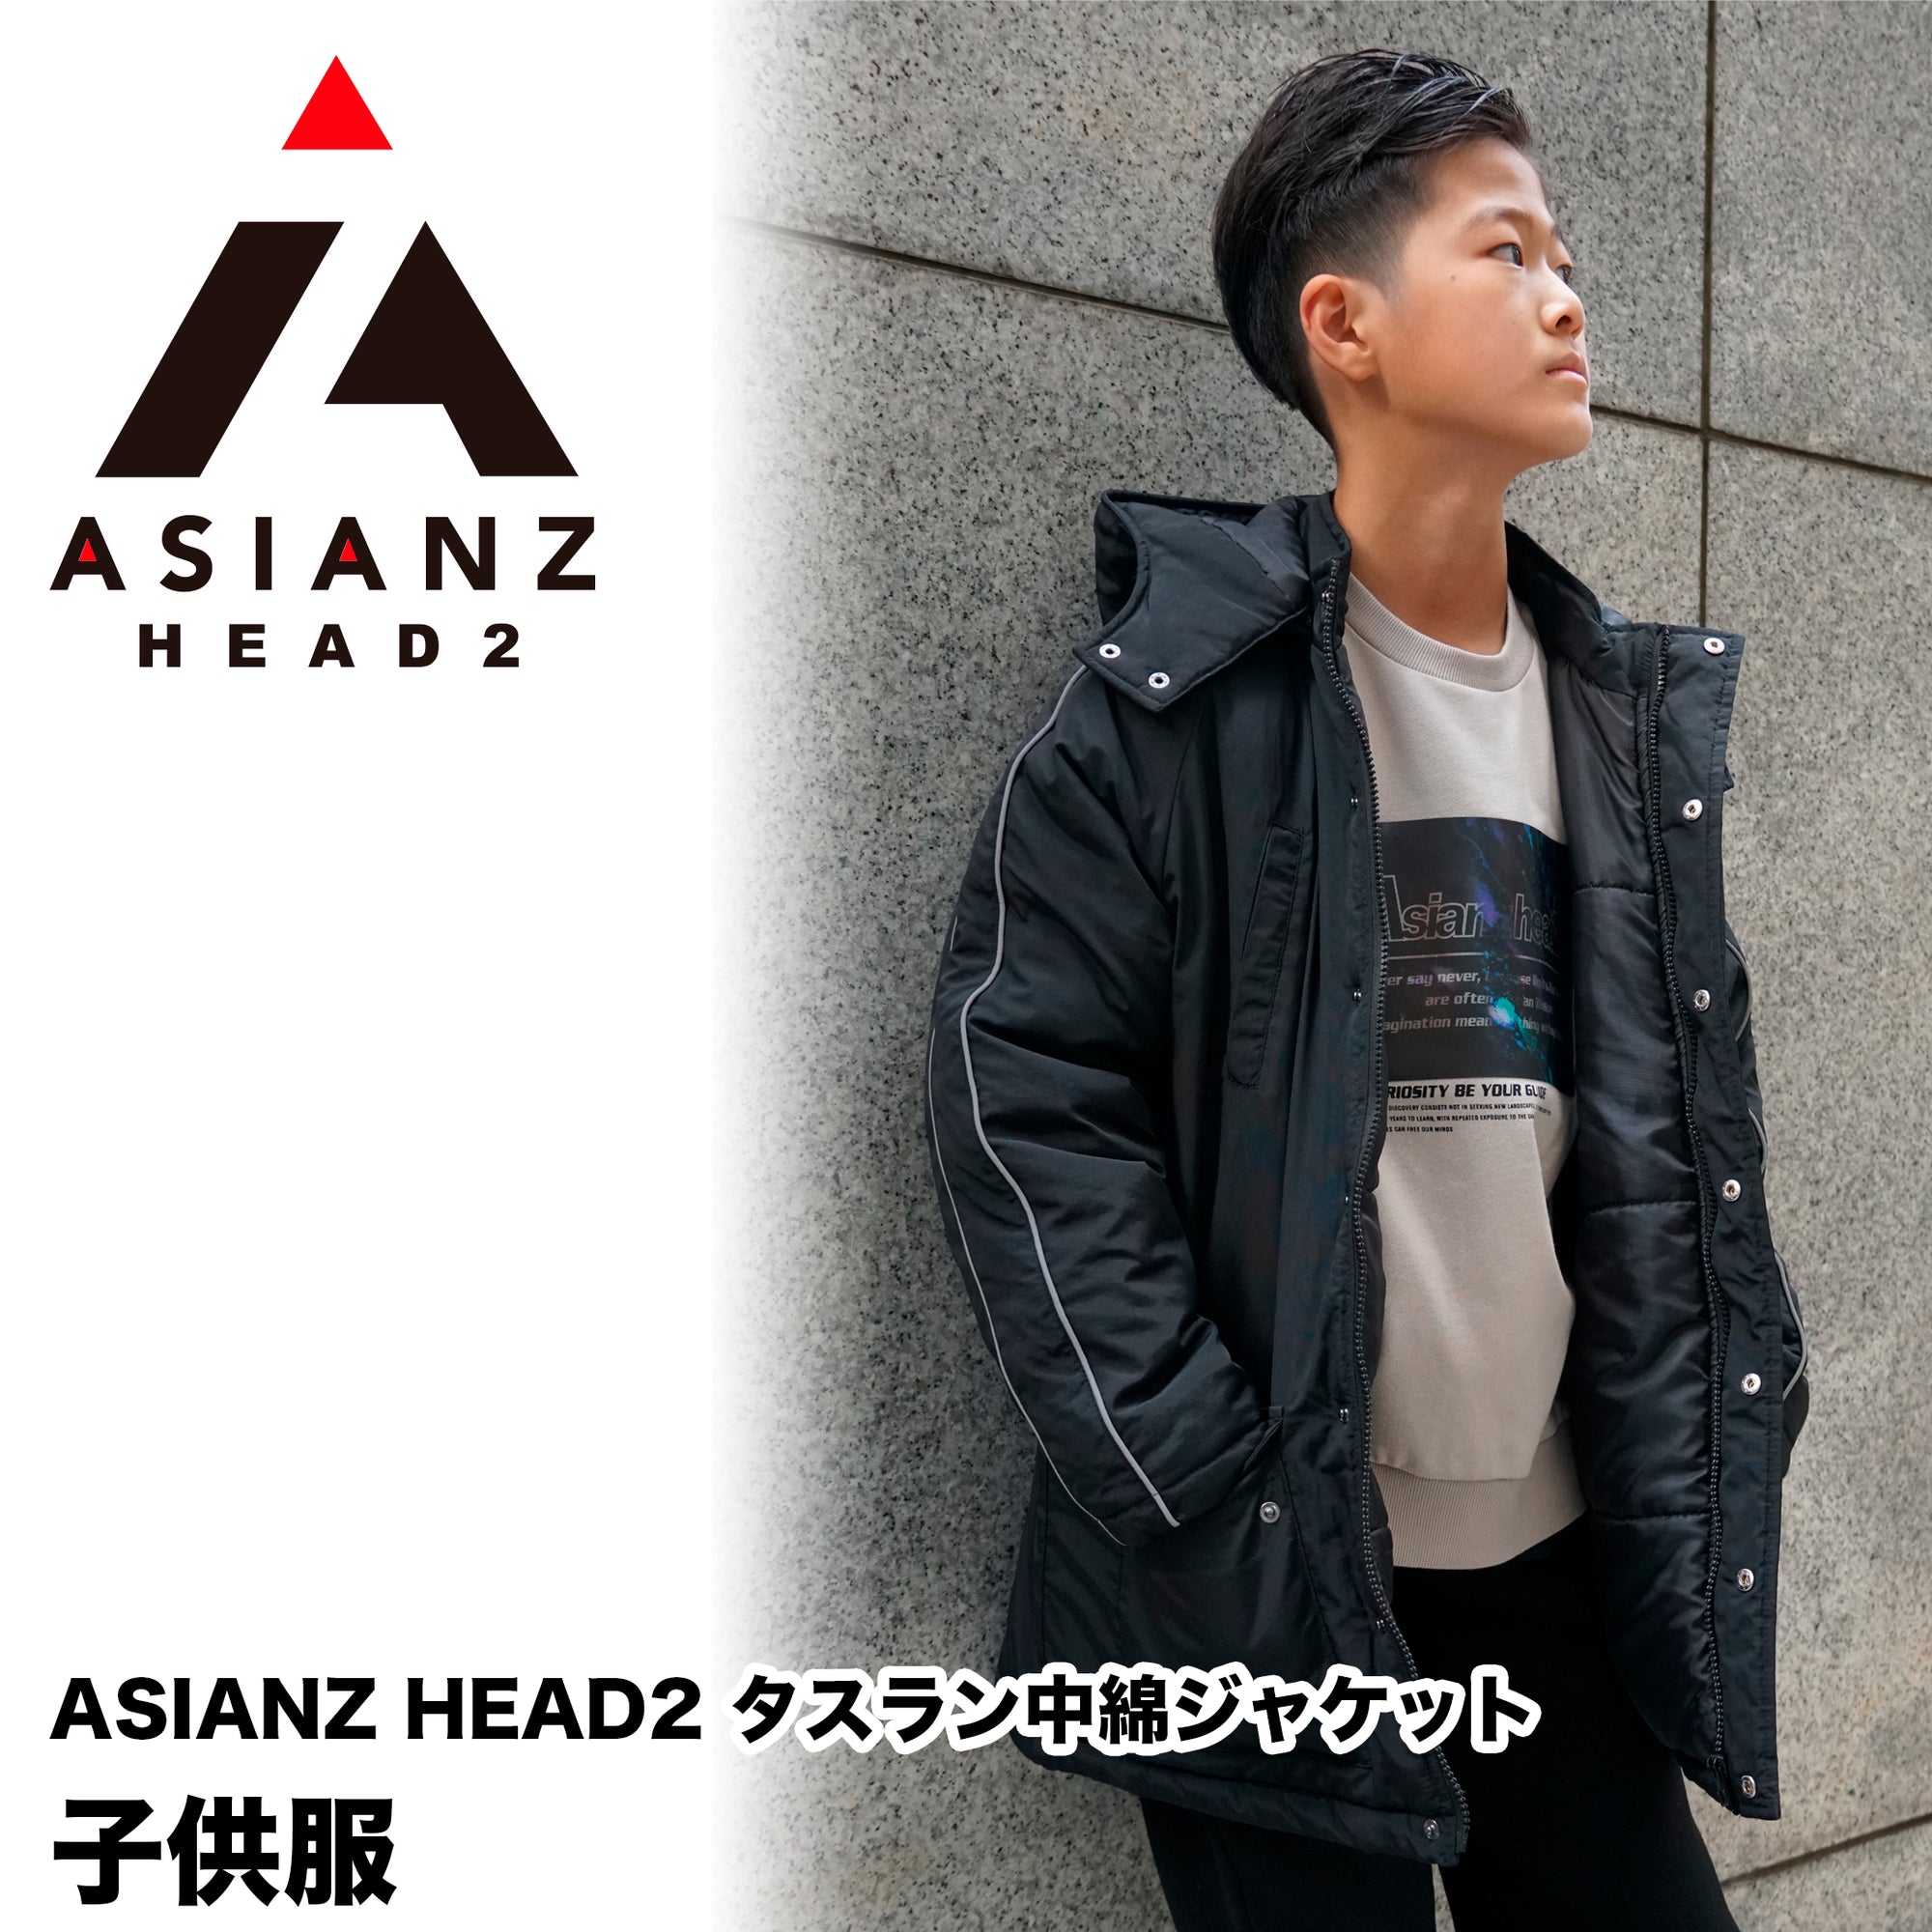 (40%オフ! セール商品)ASIANZ HEAD2 タスラン中綿ジャケット キッズウェアー